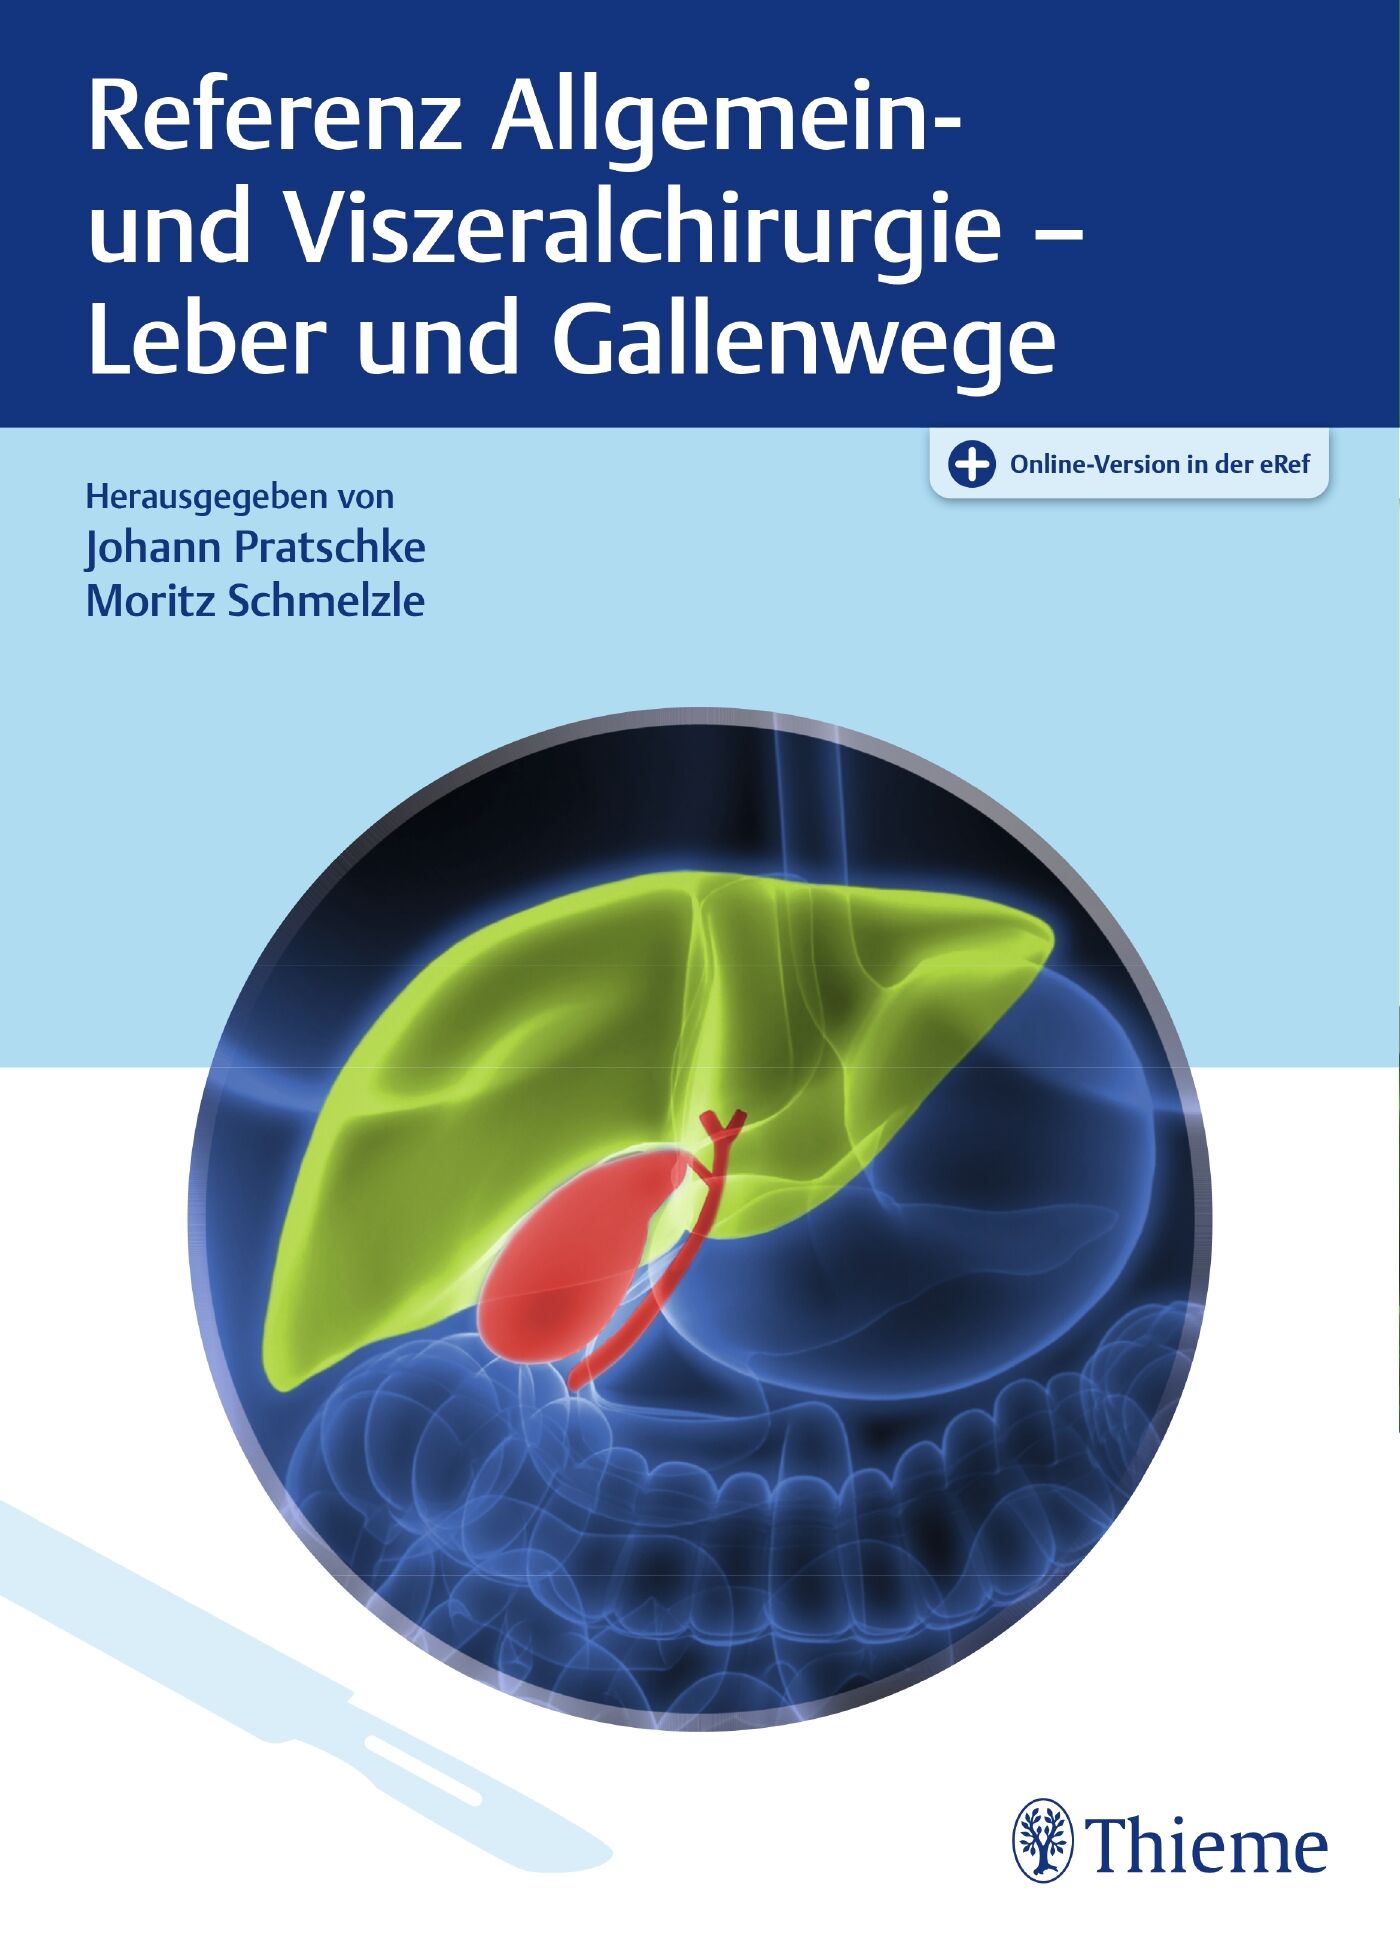 Referenz Allgemein- und Viszeralchirurgie: Leber und Gallenwege, 9783132424623